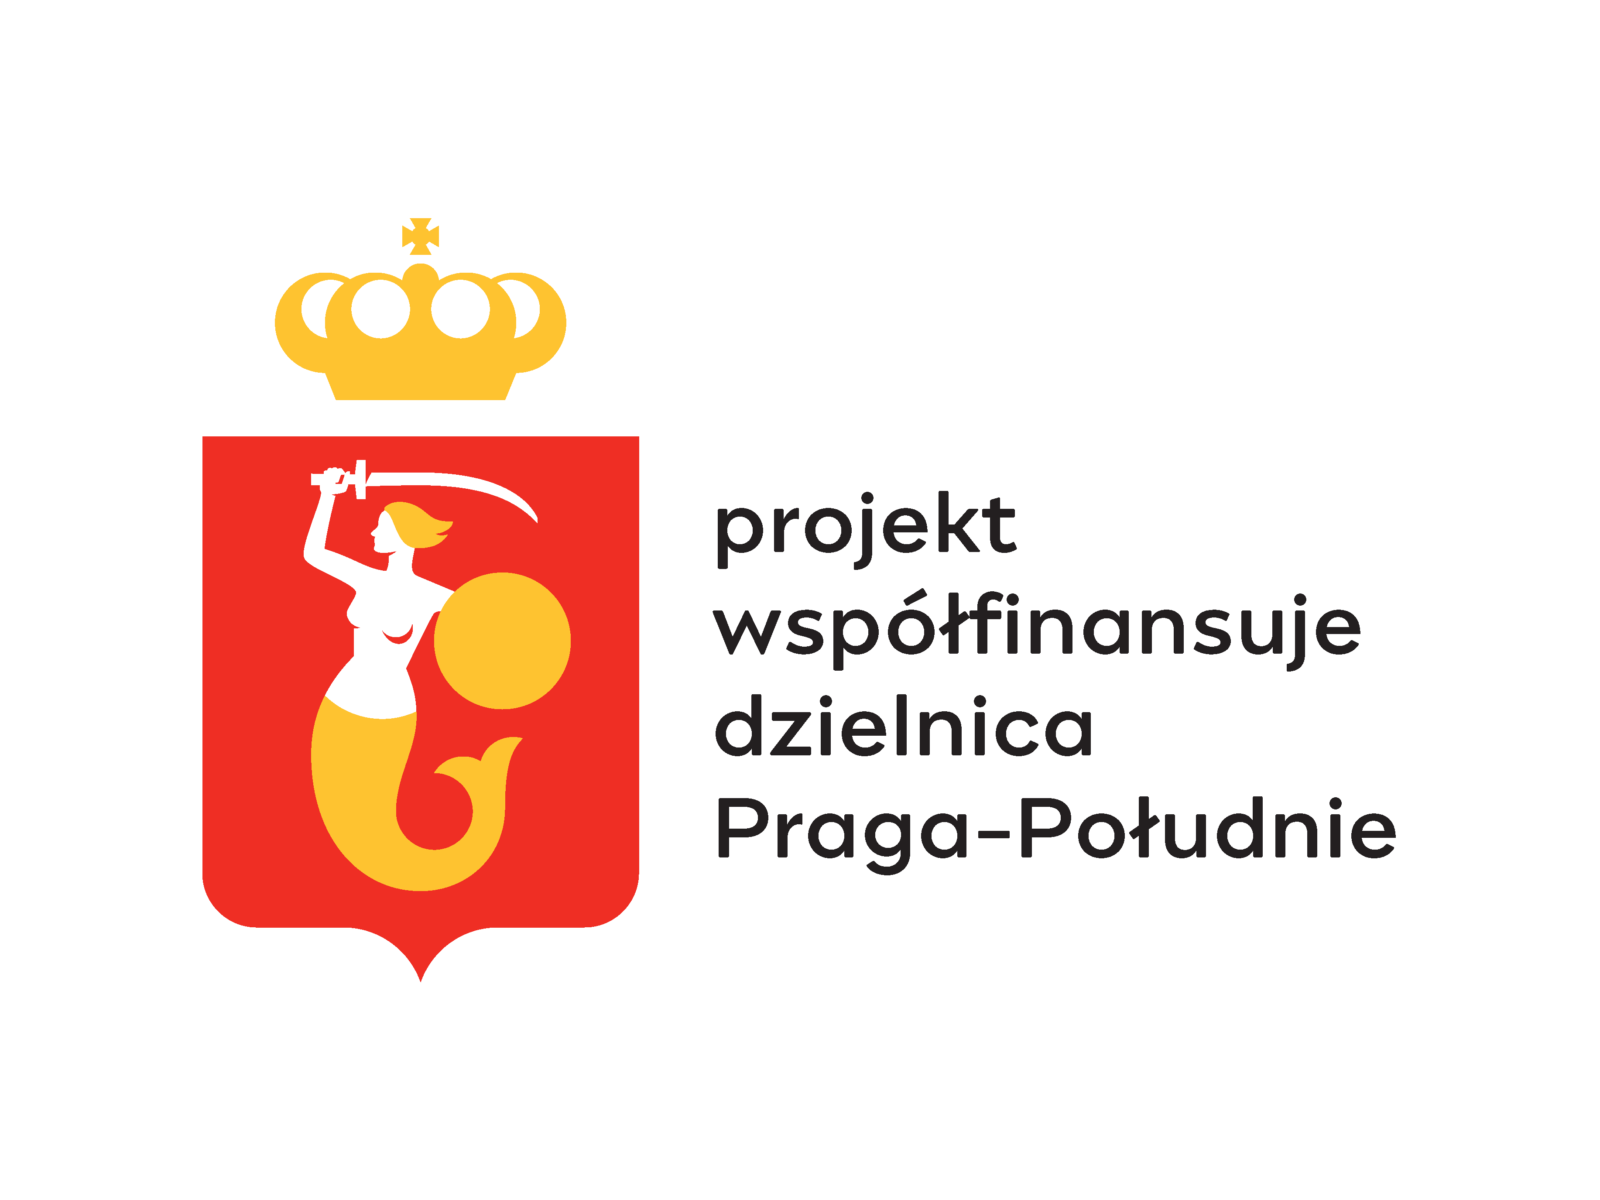 Realizacja zadań współfinansowanych przez Miasto Stołeczne Warszawa – Dzielnicę Praga-Południe